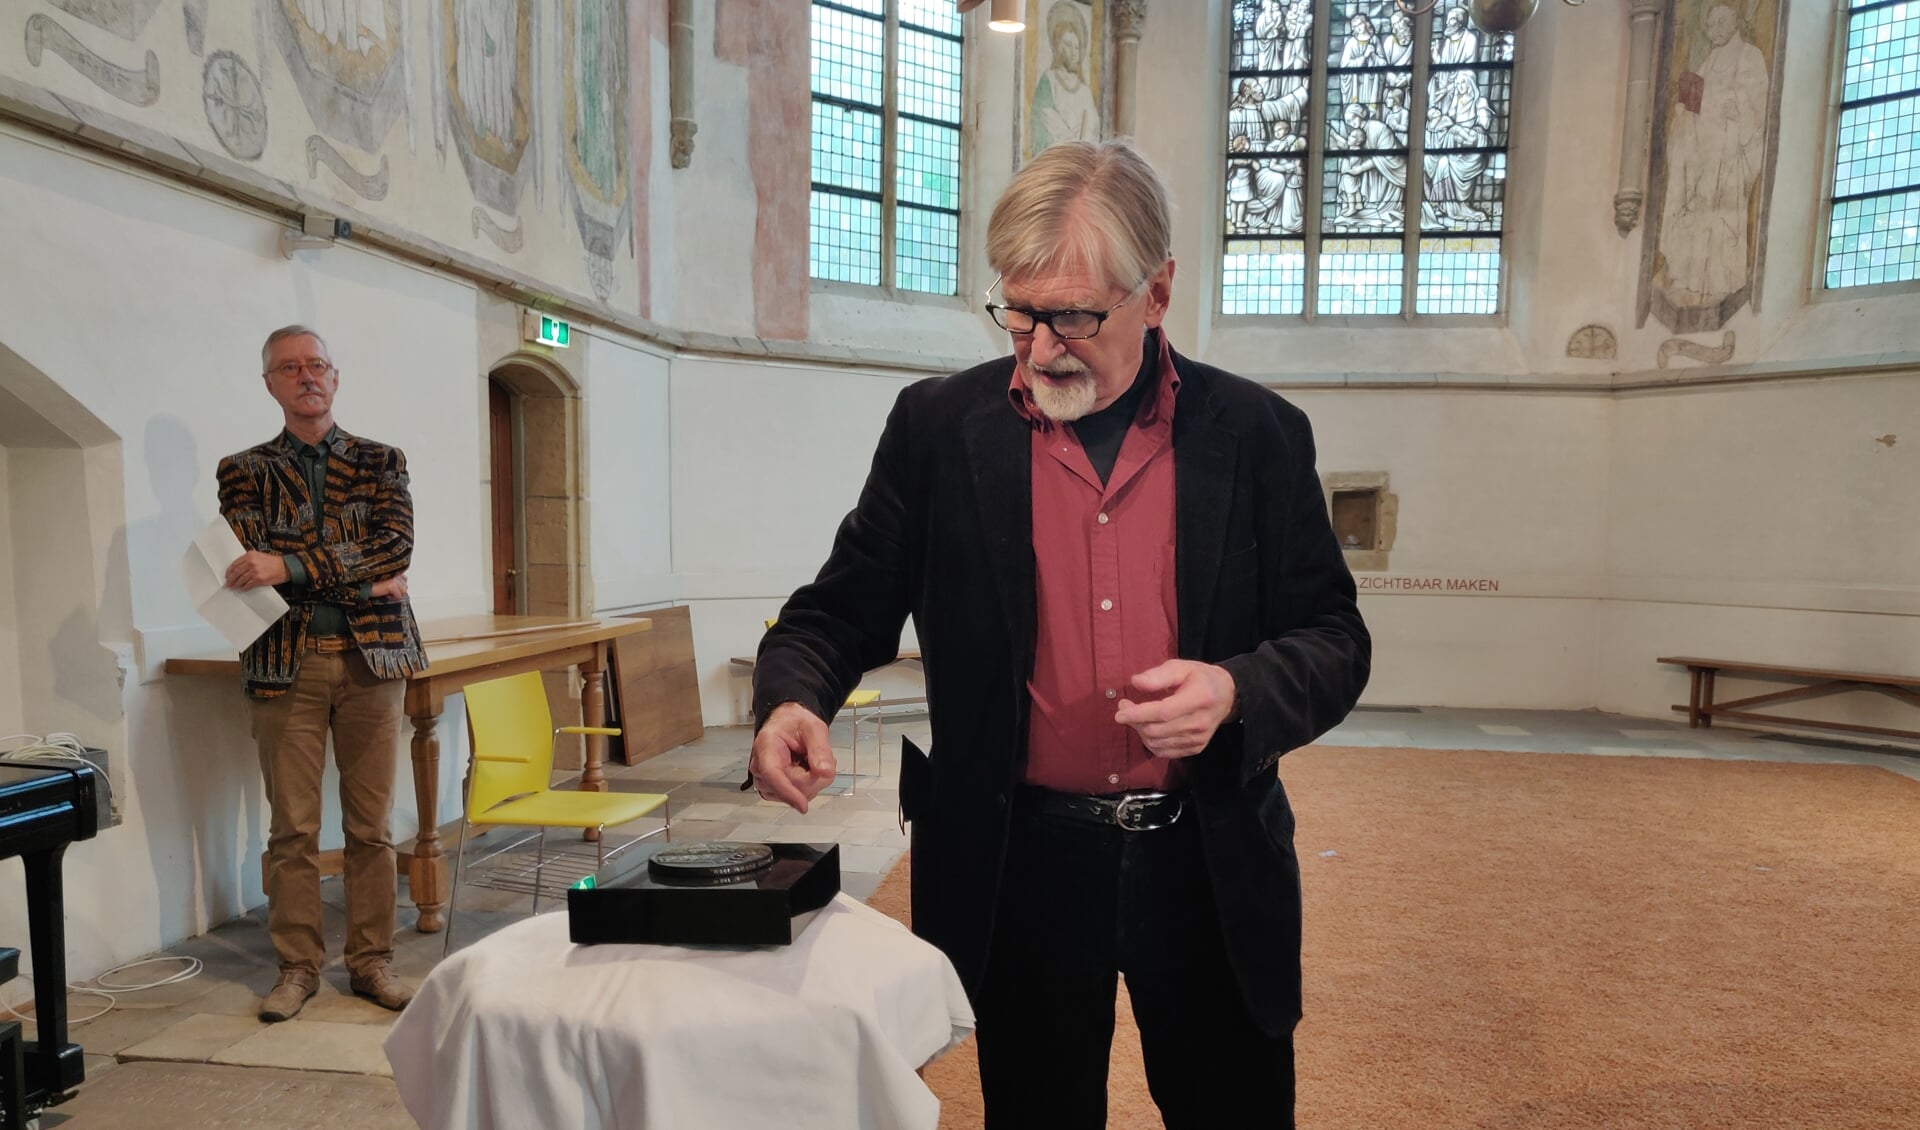 Peter Sluiter onthult de penning tijdens de presentatie in de Oude Mattheüs in Eibergen. Foto: Rob Stevens